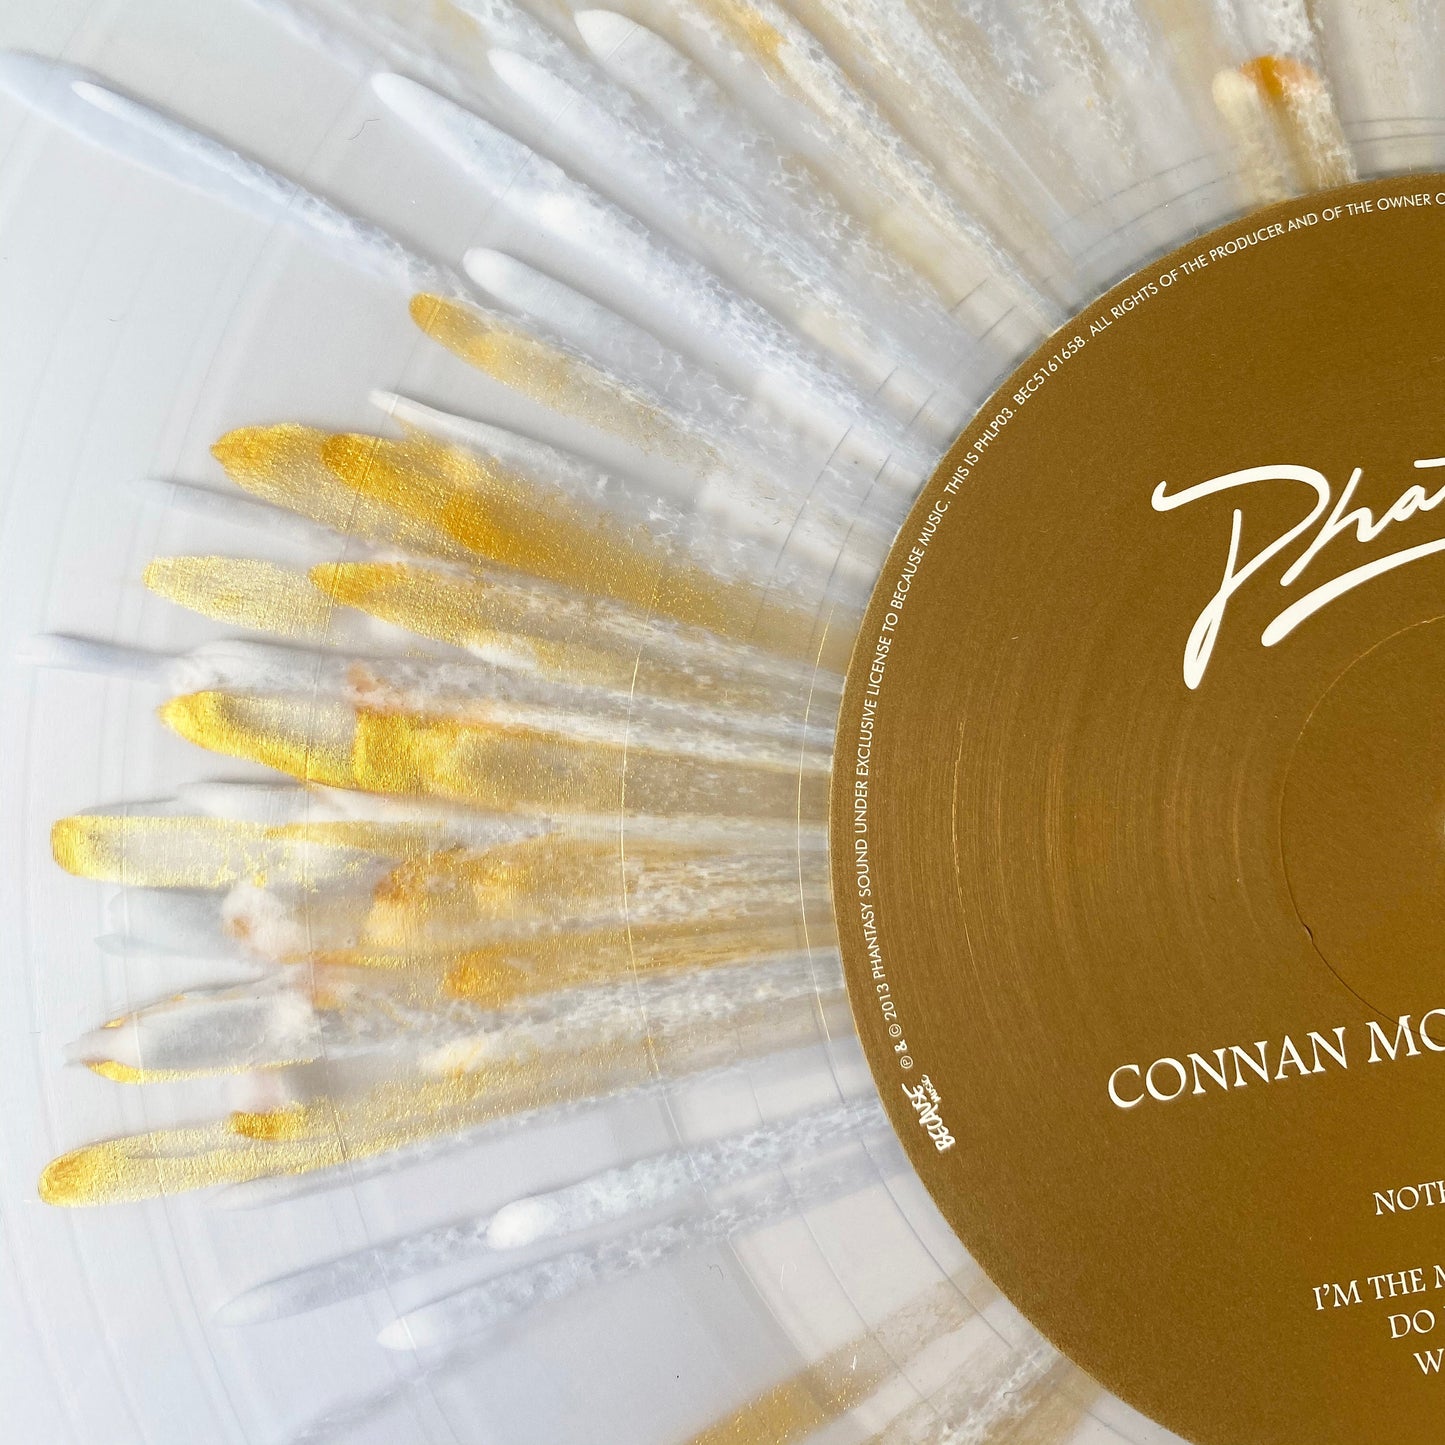 
                  
                    Connan Mockasin - Caramel (Limited Edition Splatter Vinyl) LP [PHLP03SV]
                  
                